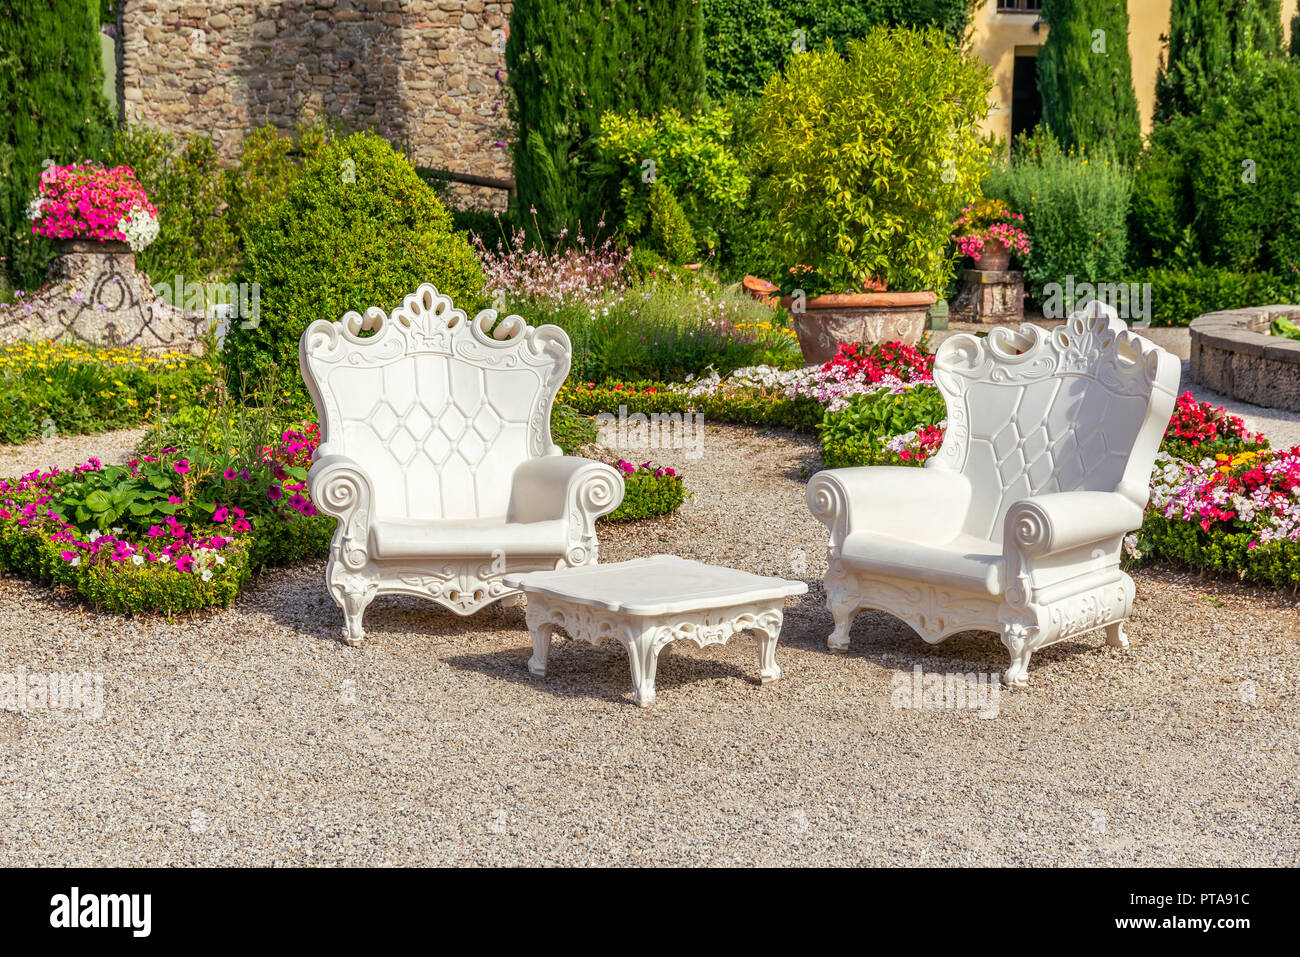 Photo horizontale de l'été en scène Garzoni jardin en Toscane avec de grands fauteuils en plastique blanc. Les chaises sont sur place avec du gravier coloré plusieurs f Banque D'Images